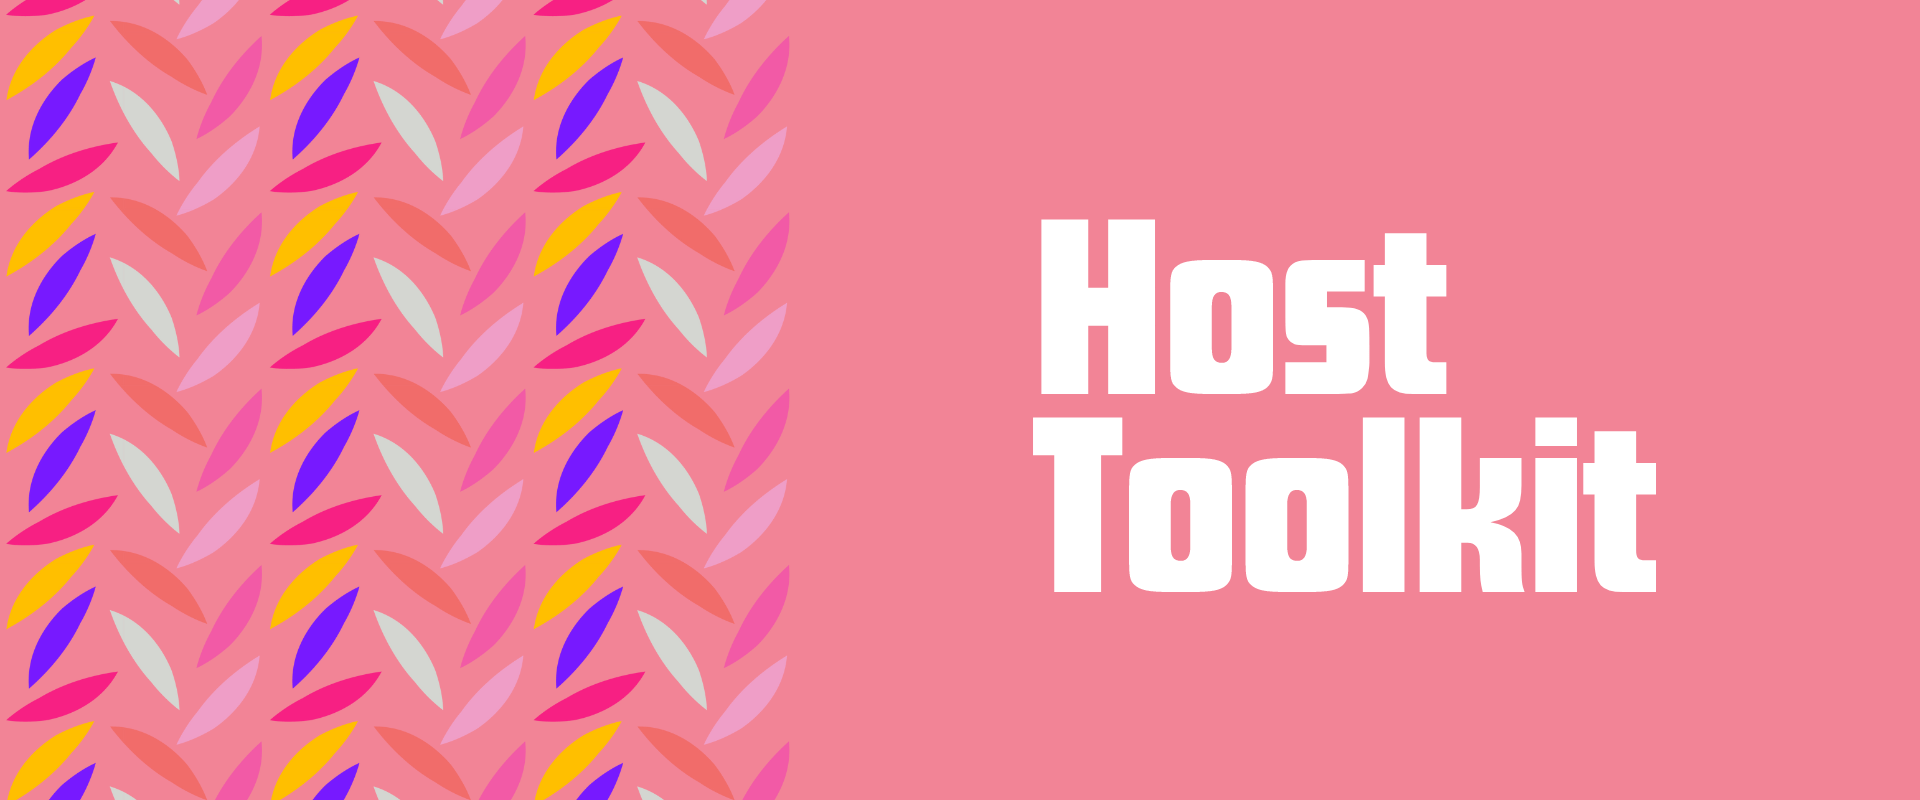 Host Toolkit